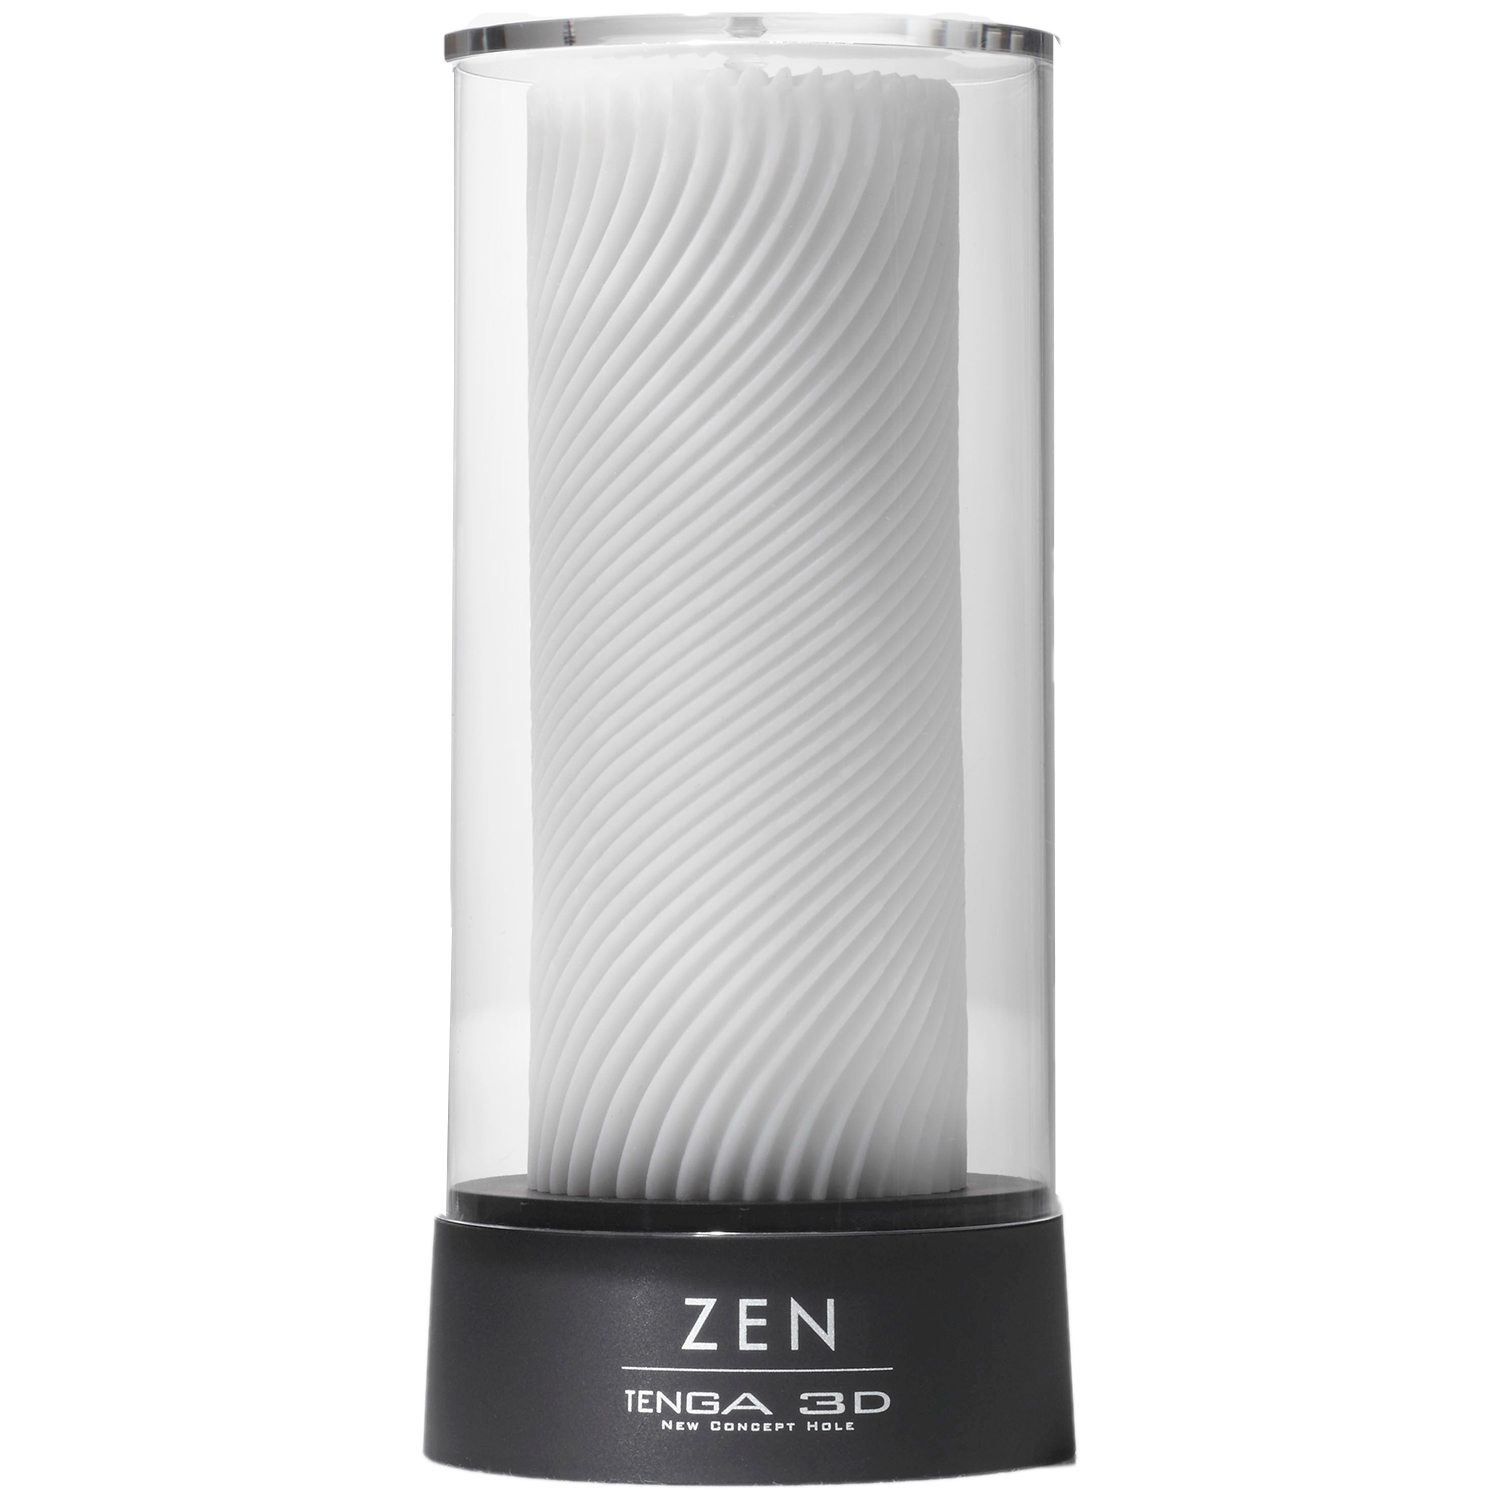 TENGA TENGA 3D Zen Onaniprodukt - Hvit